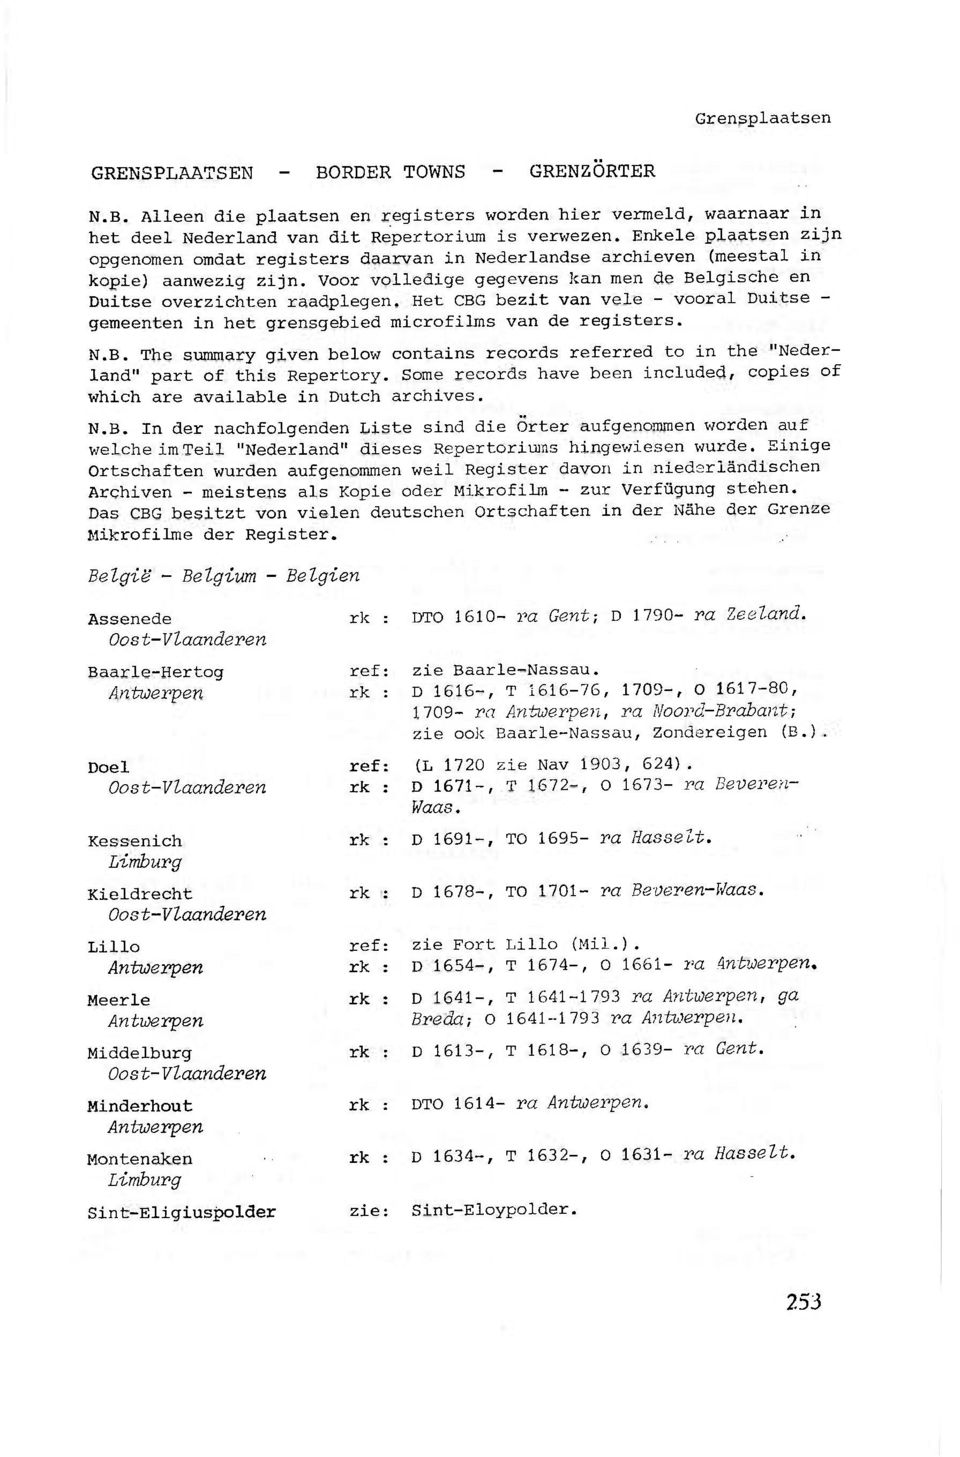 Het CBG bezit van vele - vooral Duitse - gemeenten in het grensgebied microfilms van de registers. N.B. The summary given below contains records referred to in the "Nederland" part of this Repertory.